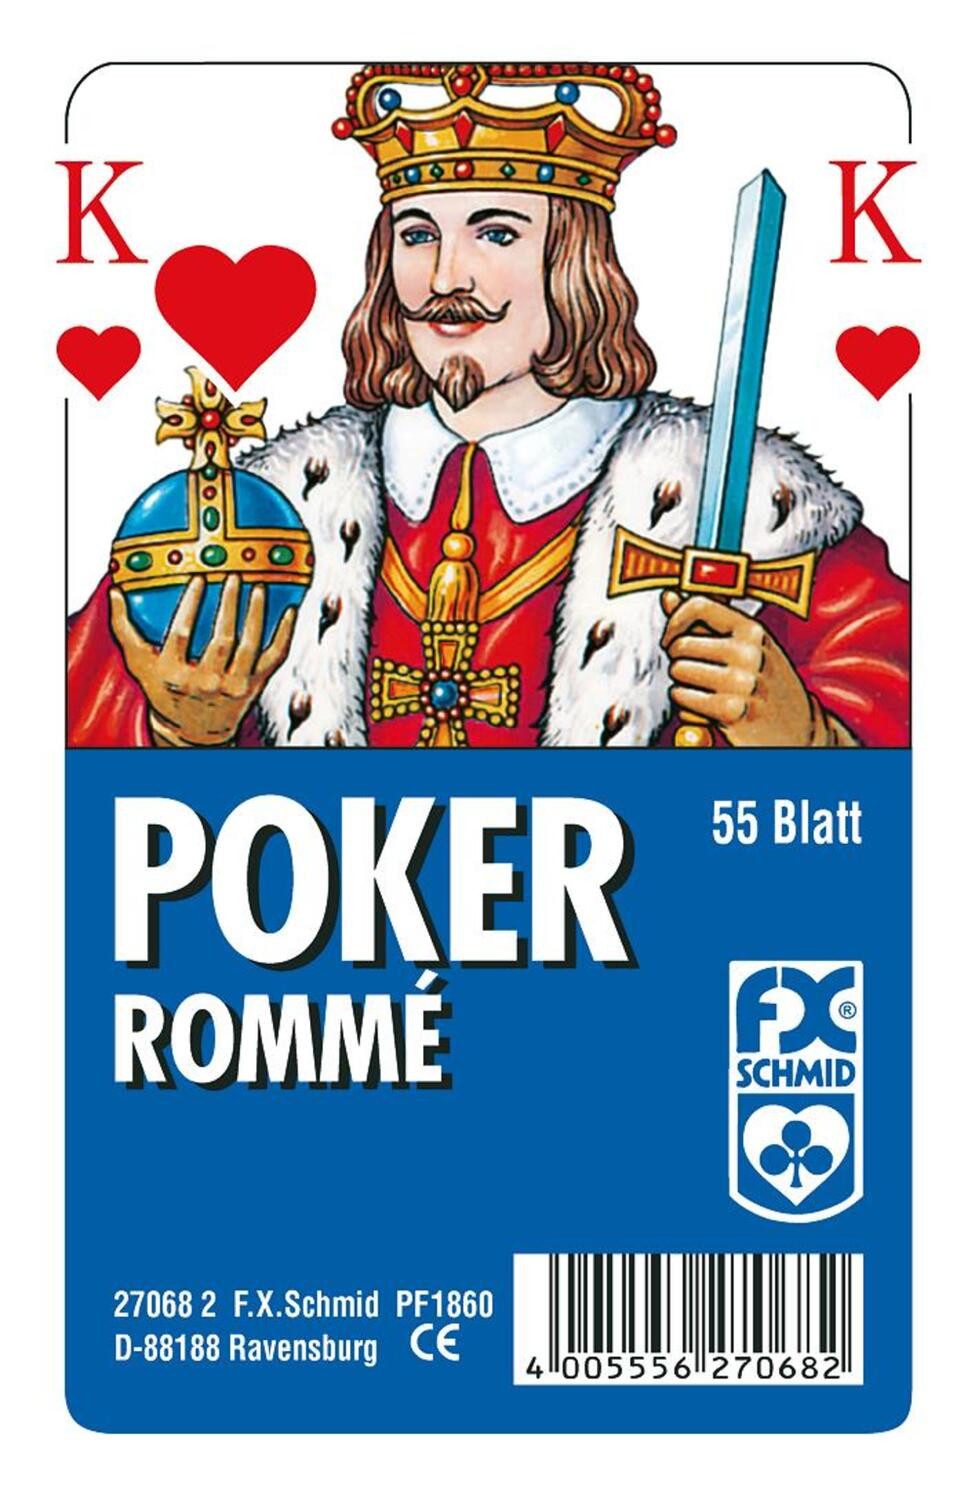 Ravensburger Spiel, Poker, Rommé - Französisches Bild